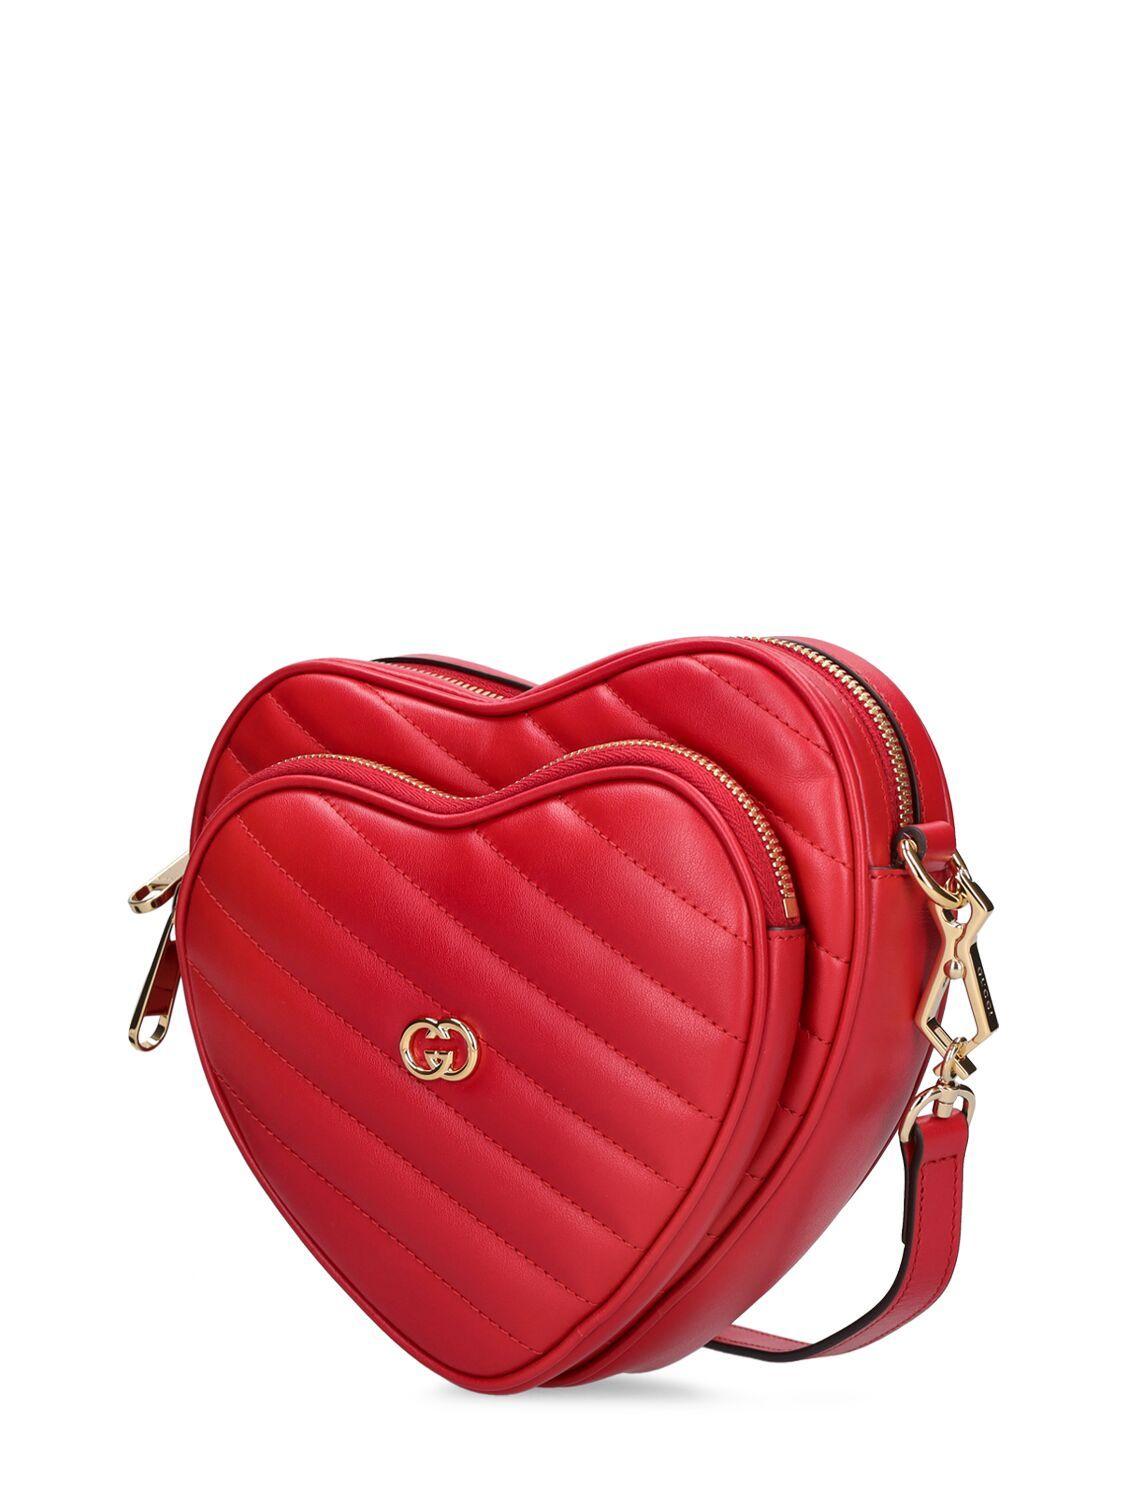 Gucci Interlocking G Mini Heart Shoulder Bag - White